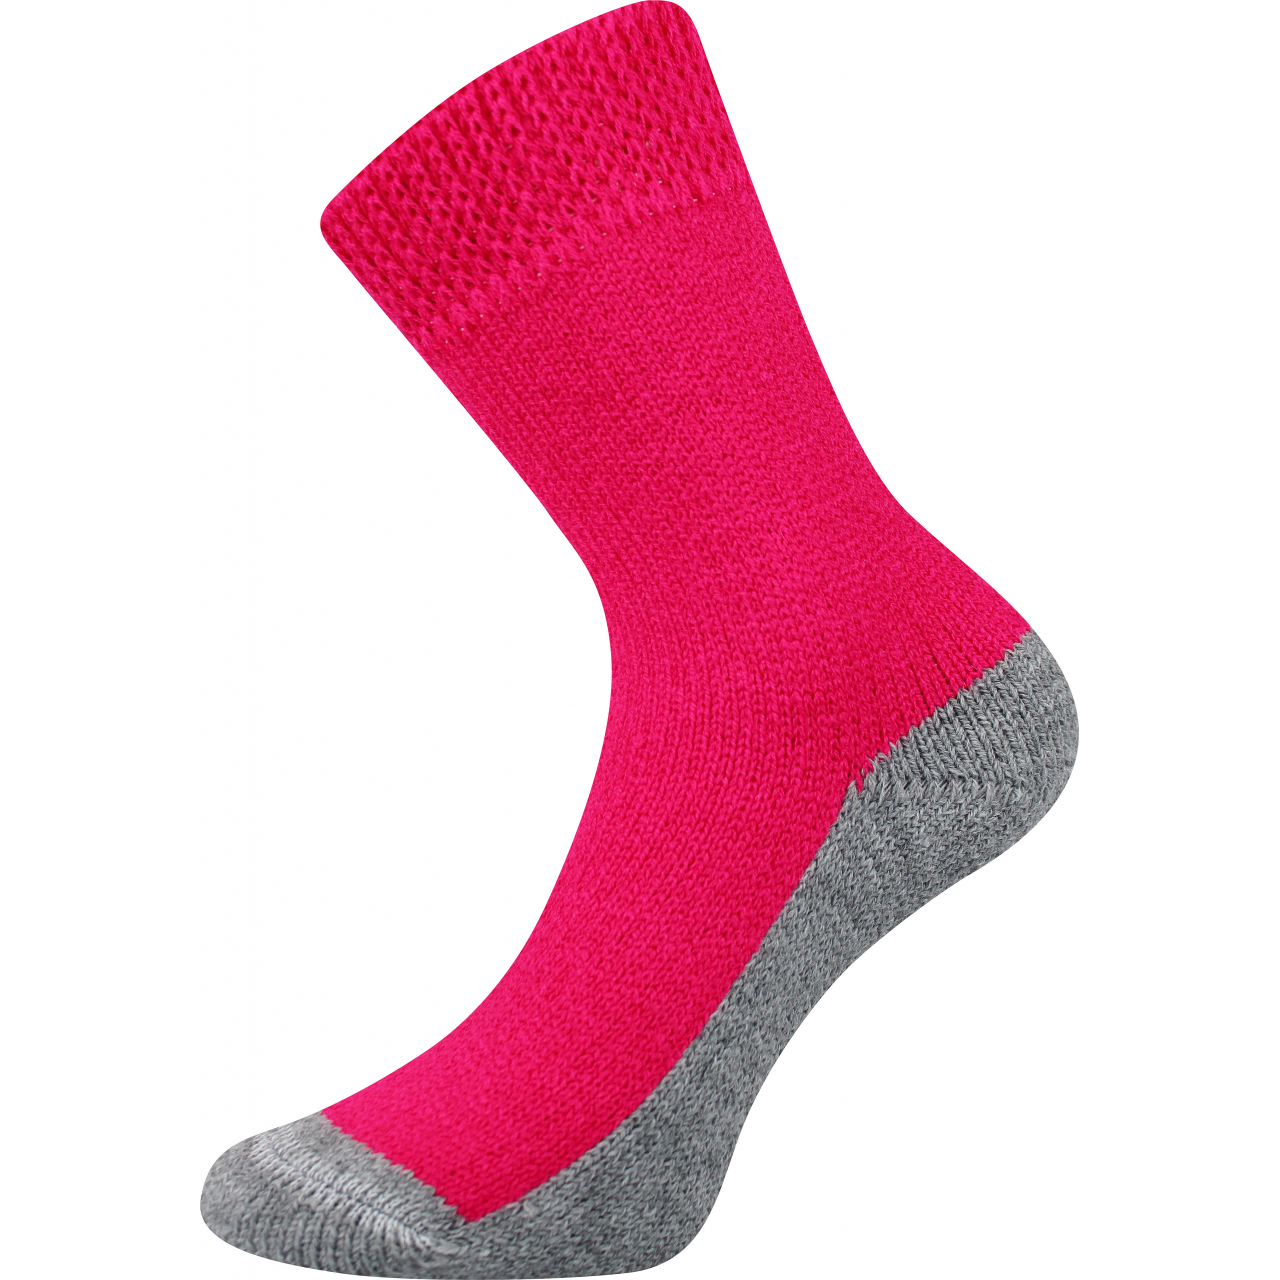 Ponožky unisex Boma Spací - tmavě růžové, 39-42